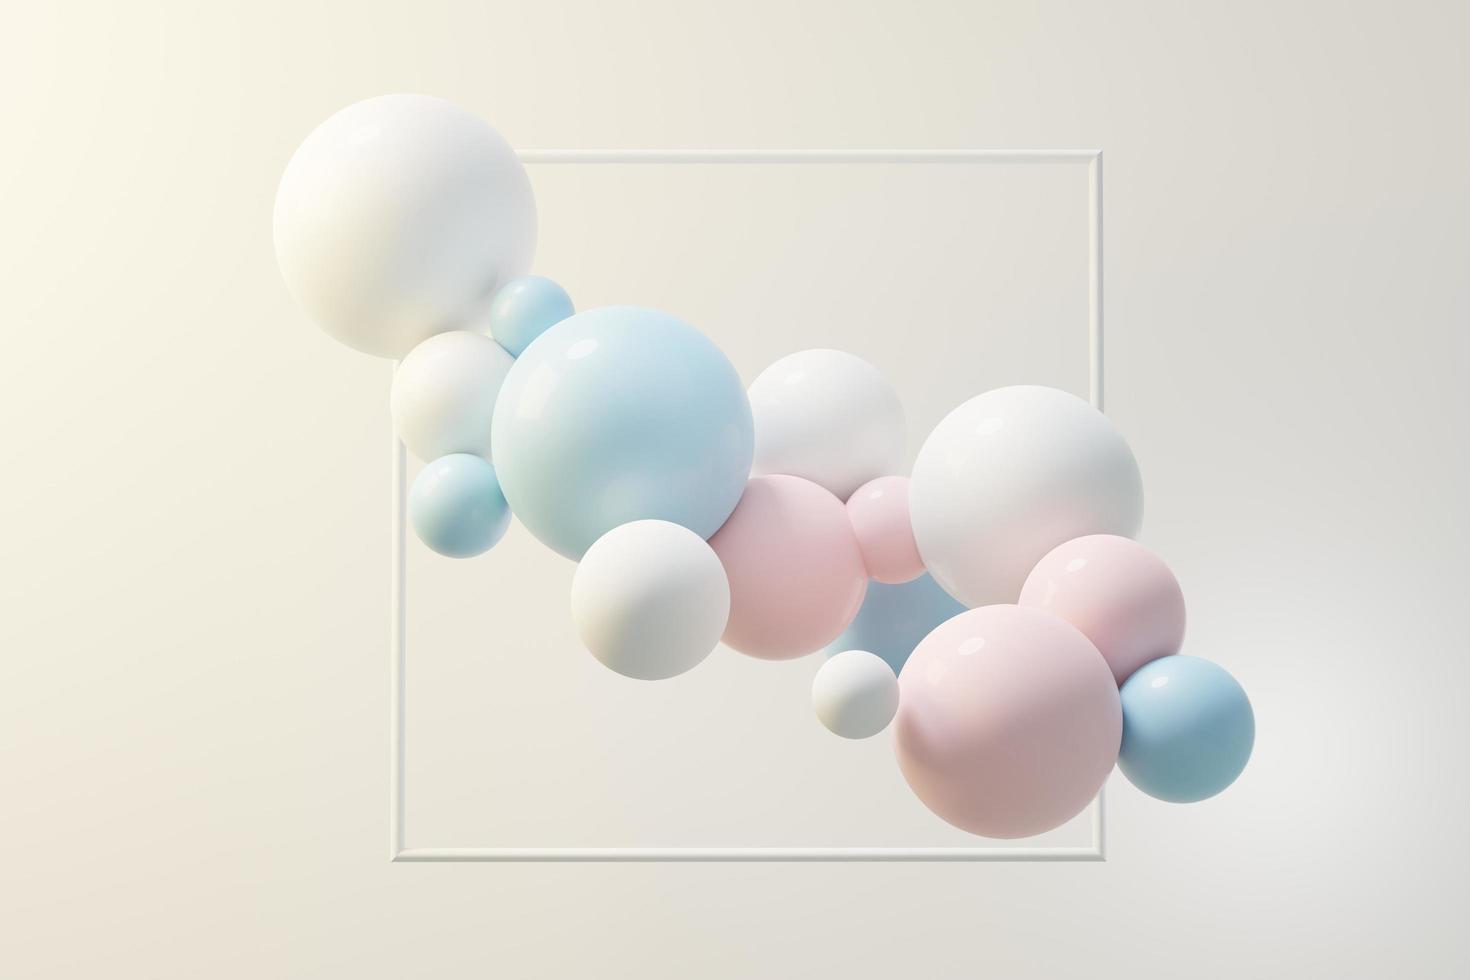 rendu 3d de boule pastel, bulles de savons, blobs qui flottent dans l'air isolés sur fond pastel. scène abstraite. photo